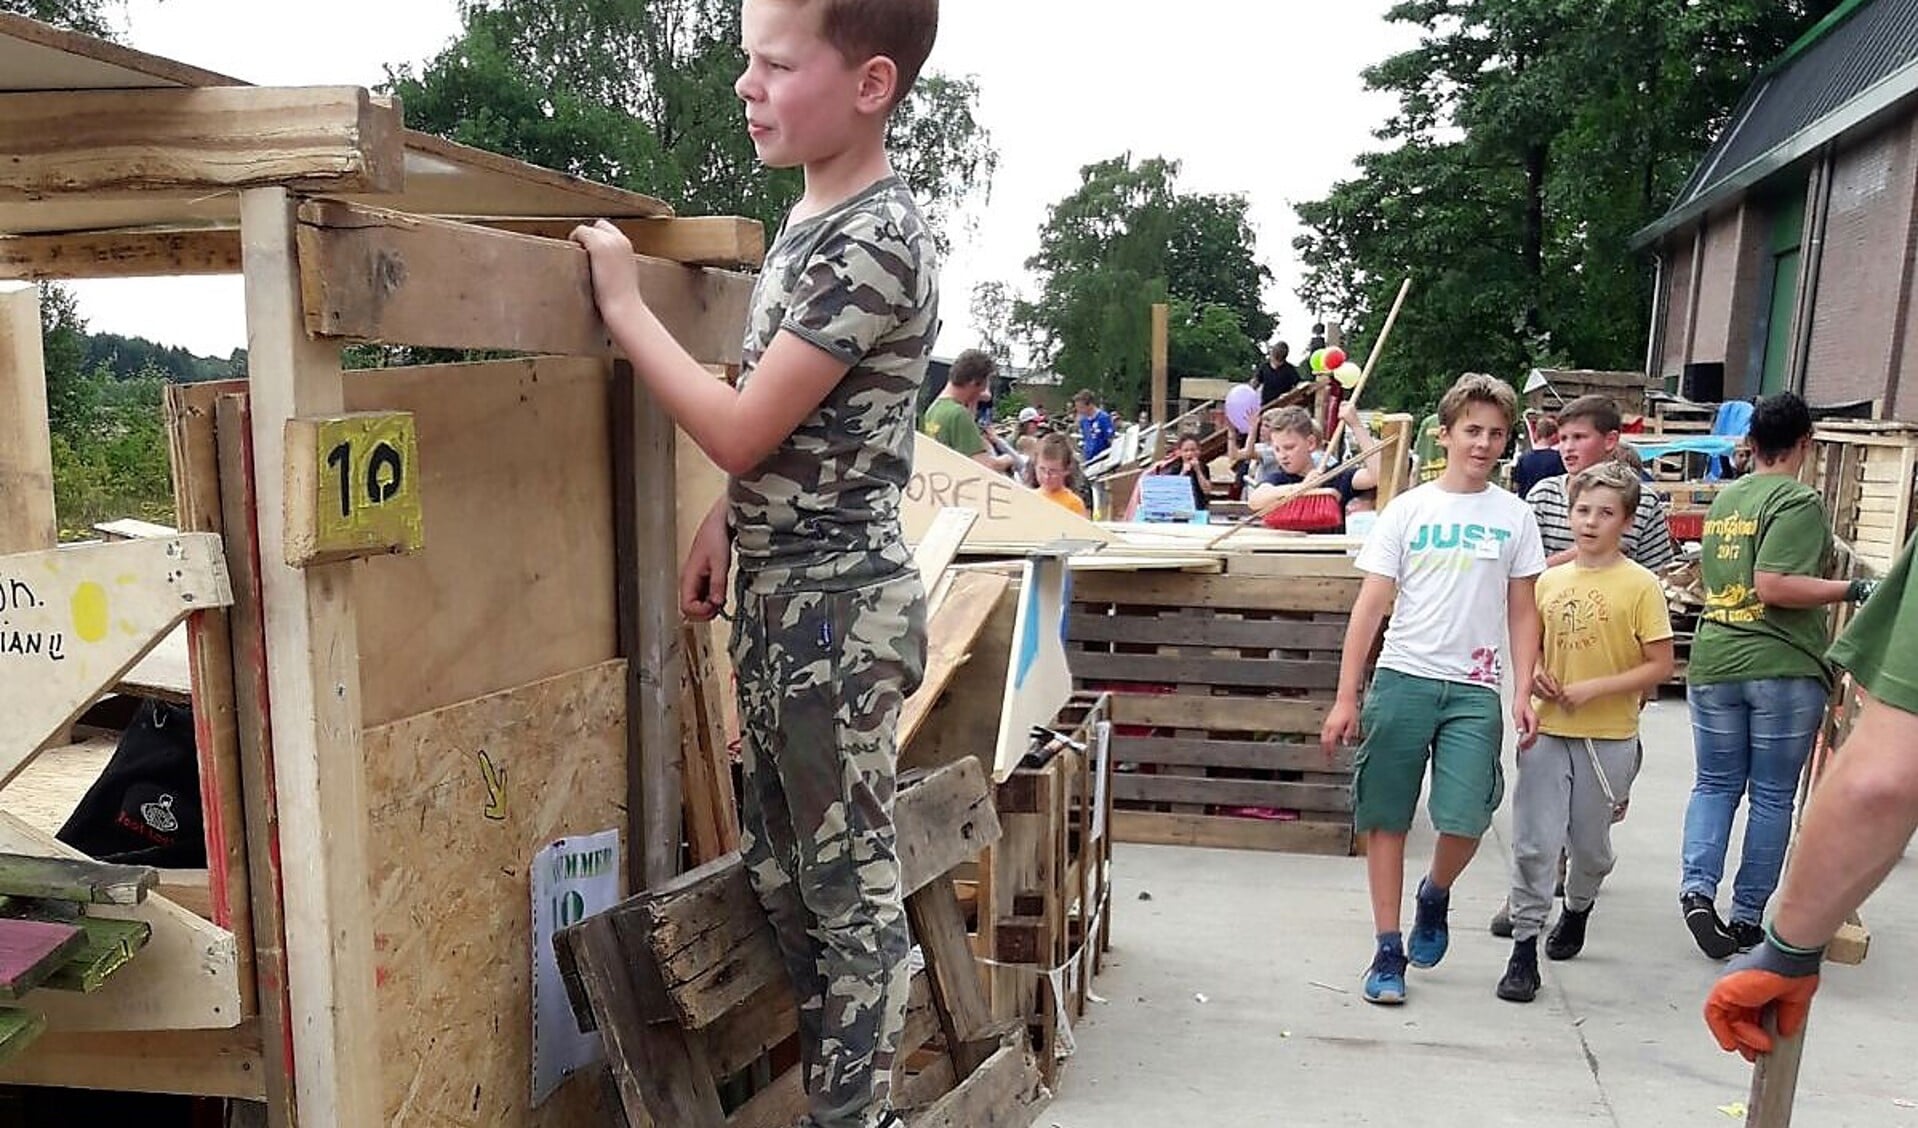 Het huttenbouwdorp is al jaren een plek waar kinderen in de zomervakantieplezier hebben en leuke dingen beleven.